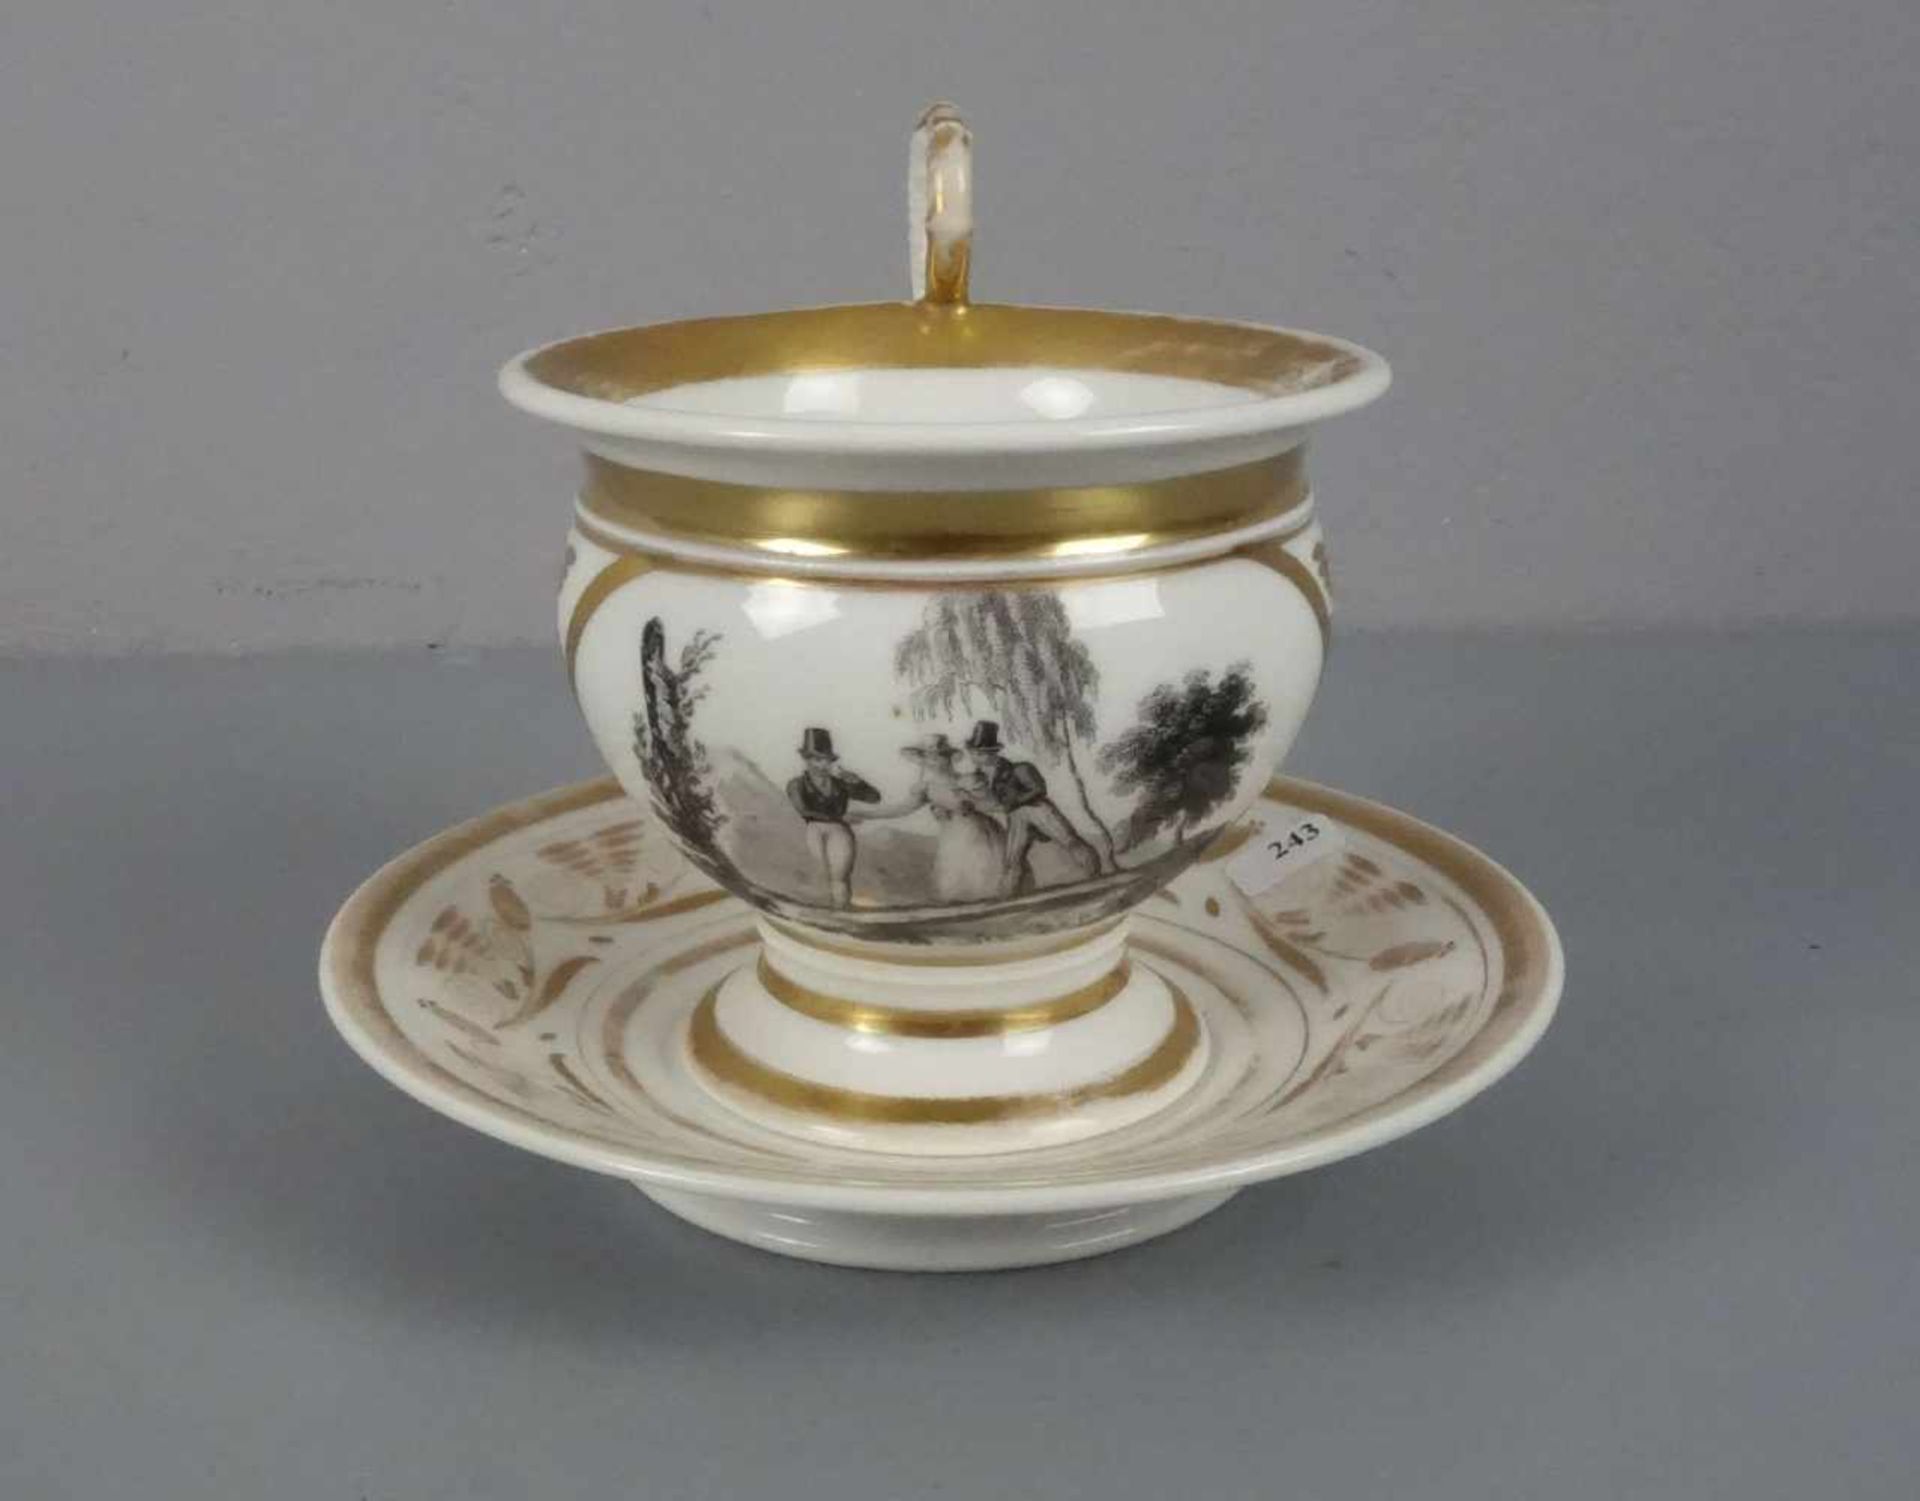 GROSSE EMPIRE-TASSE / empire cup, um 1800, Porzellan, ungemarkt, polychrom und gold staffiert. Tasse